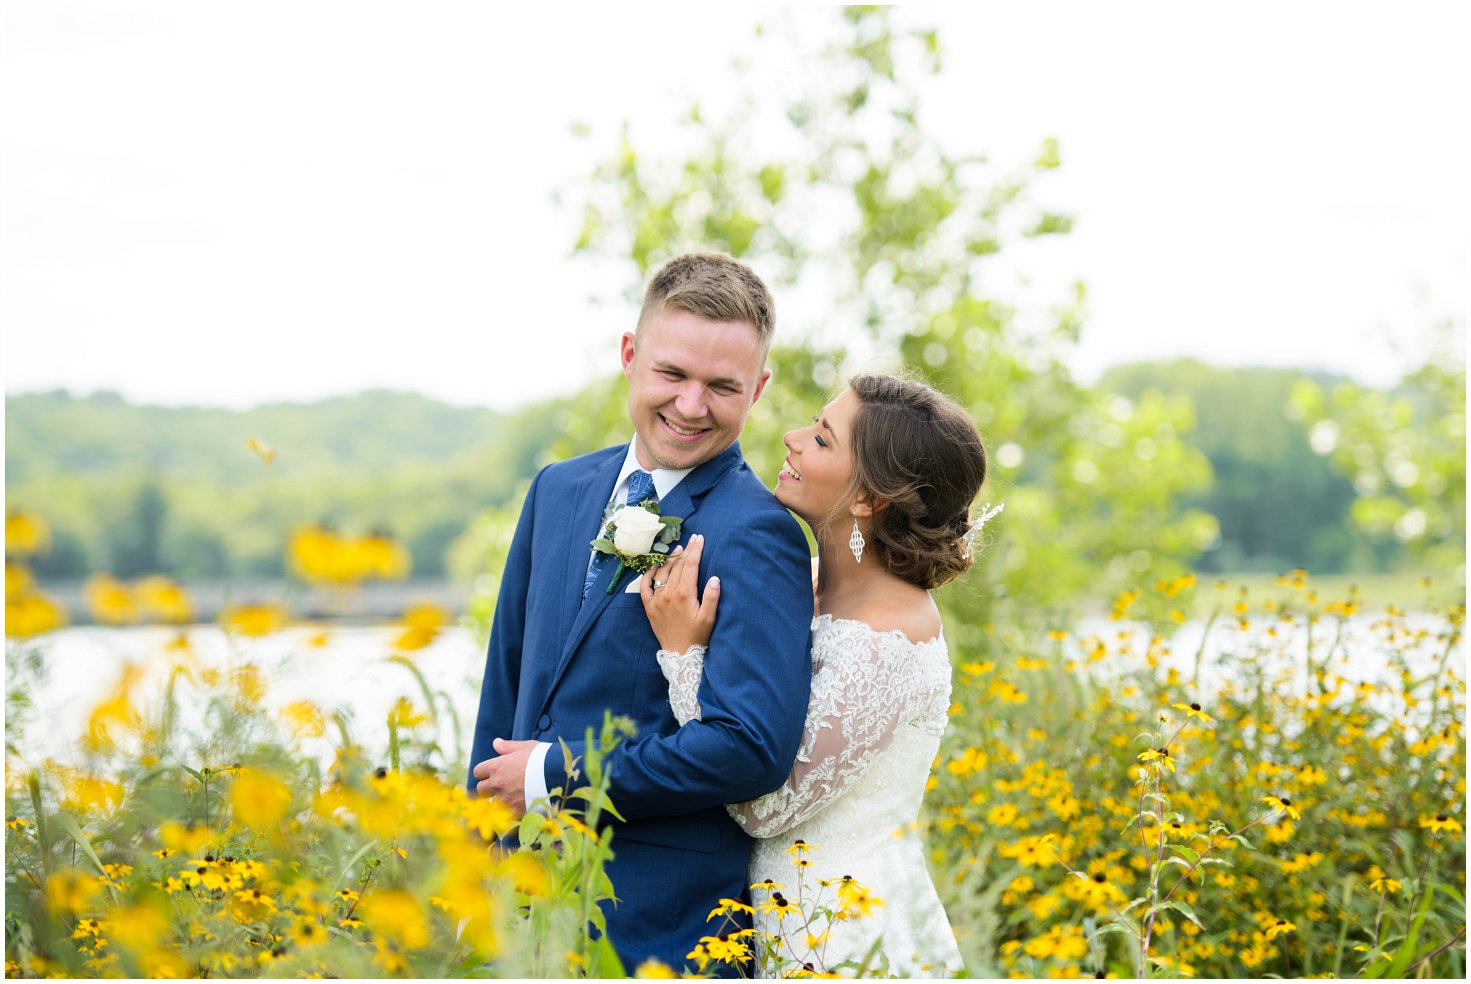 Photographers in Des Moines | Des Moines Wedding Venue